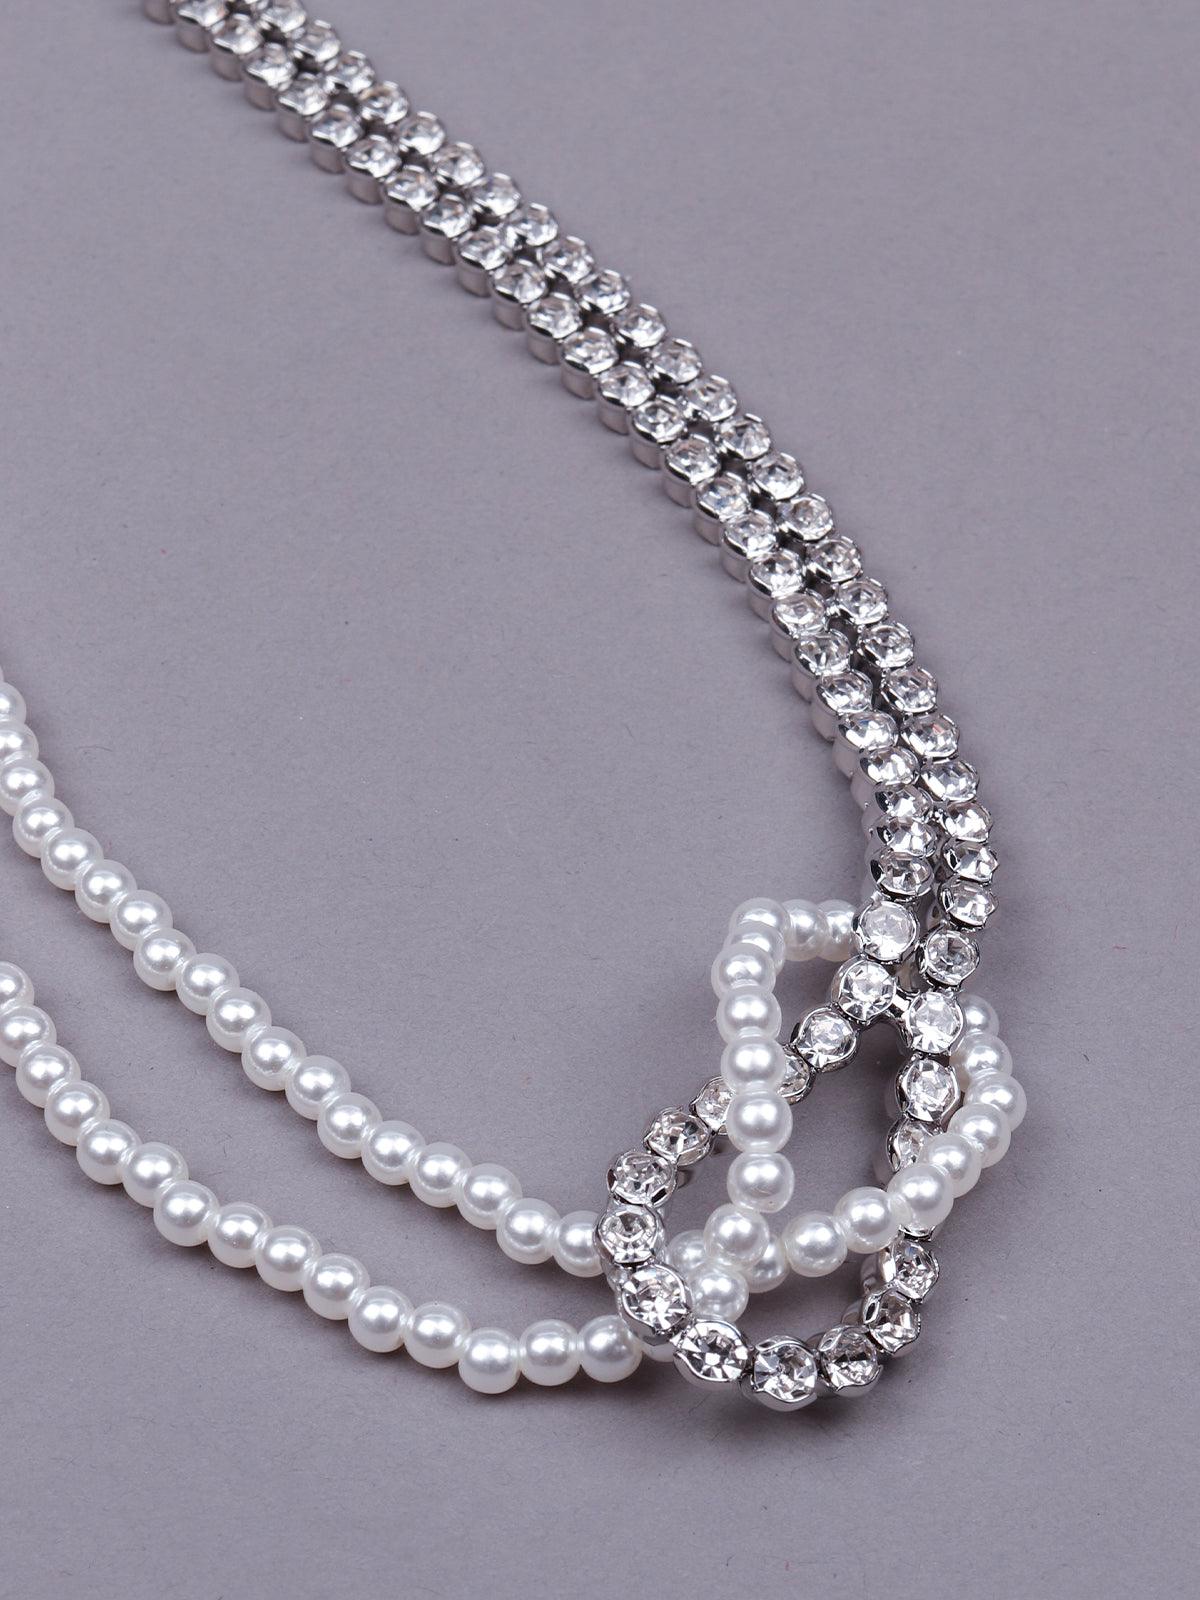 Half pearl and half studded designer necklace -Silver - Odette